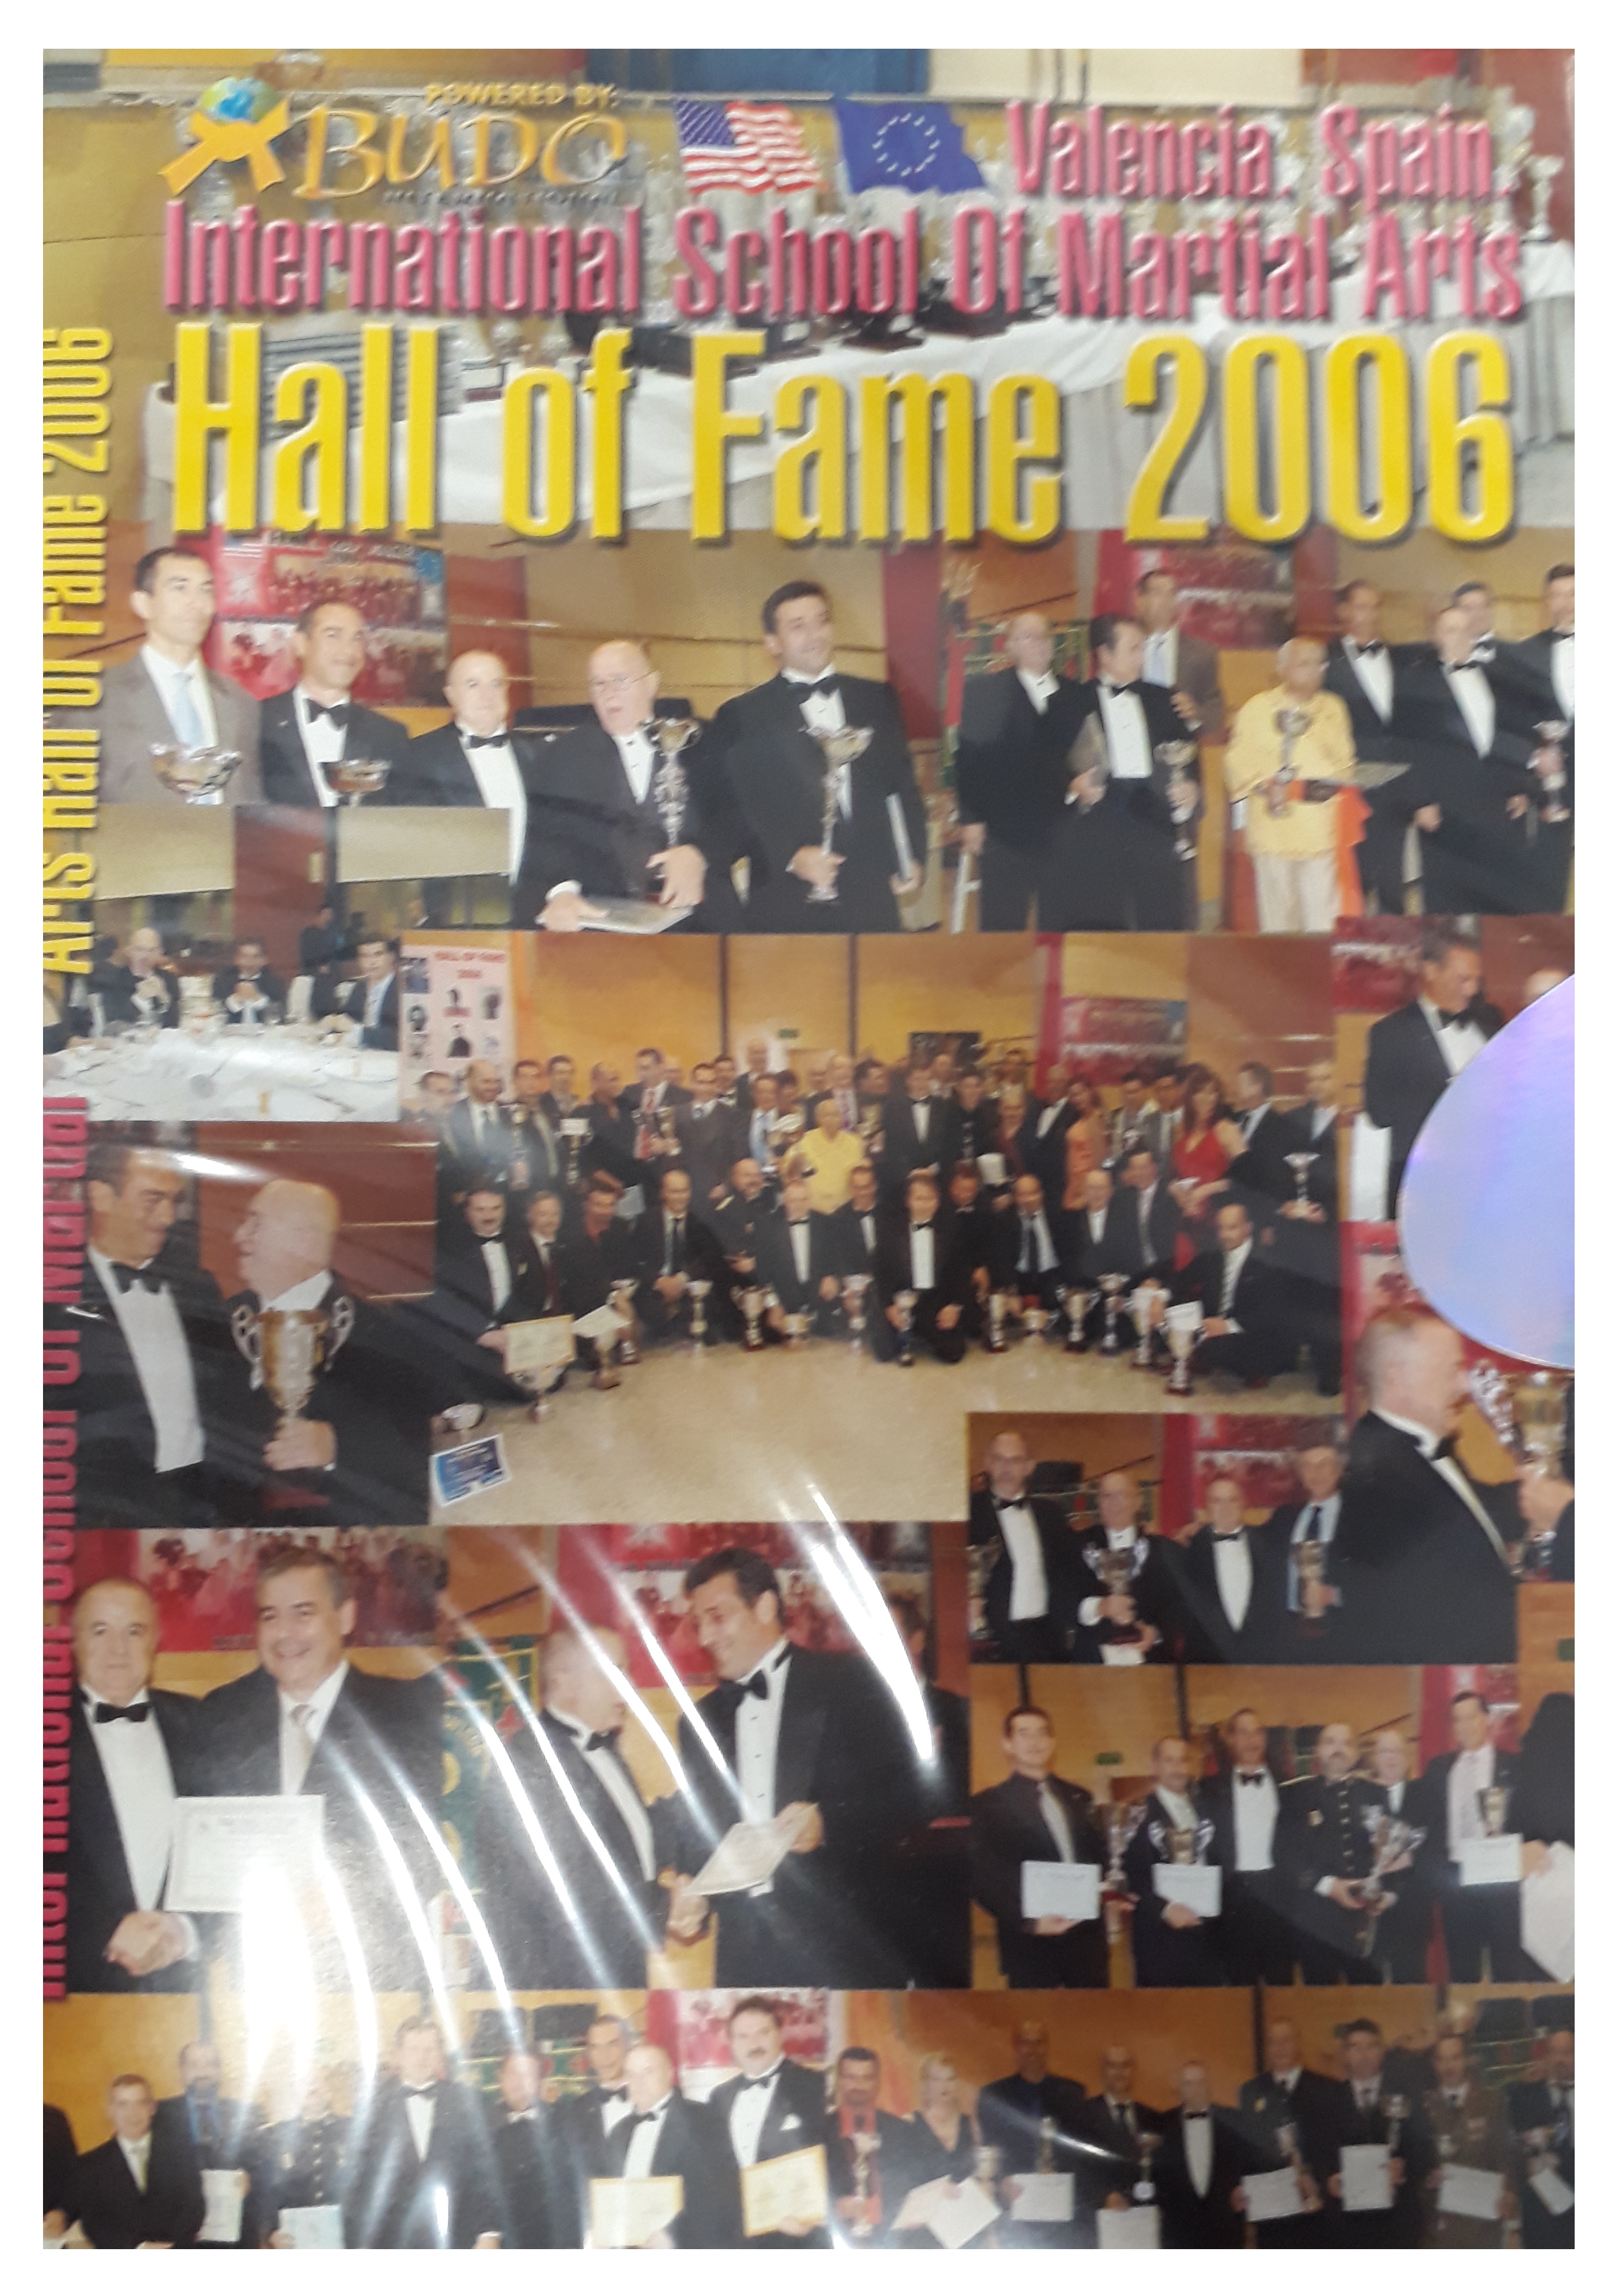 DVD Hall of Fame 2006 ISMA